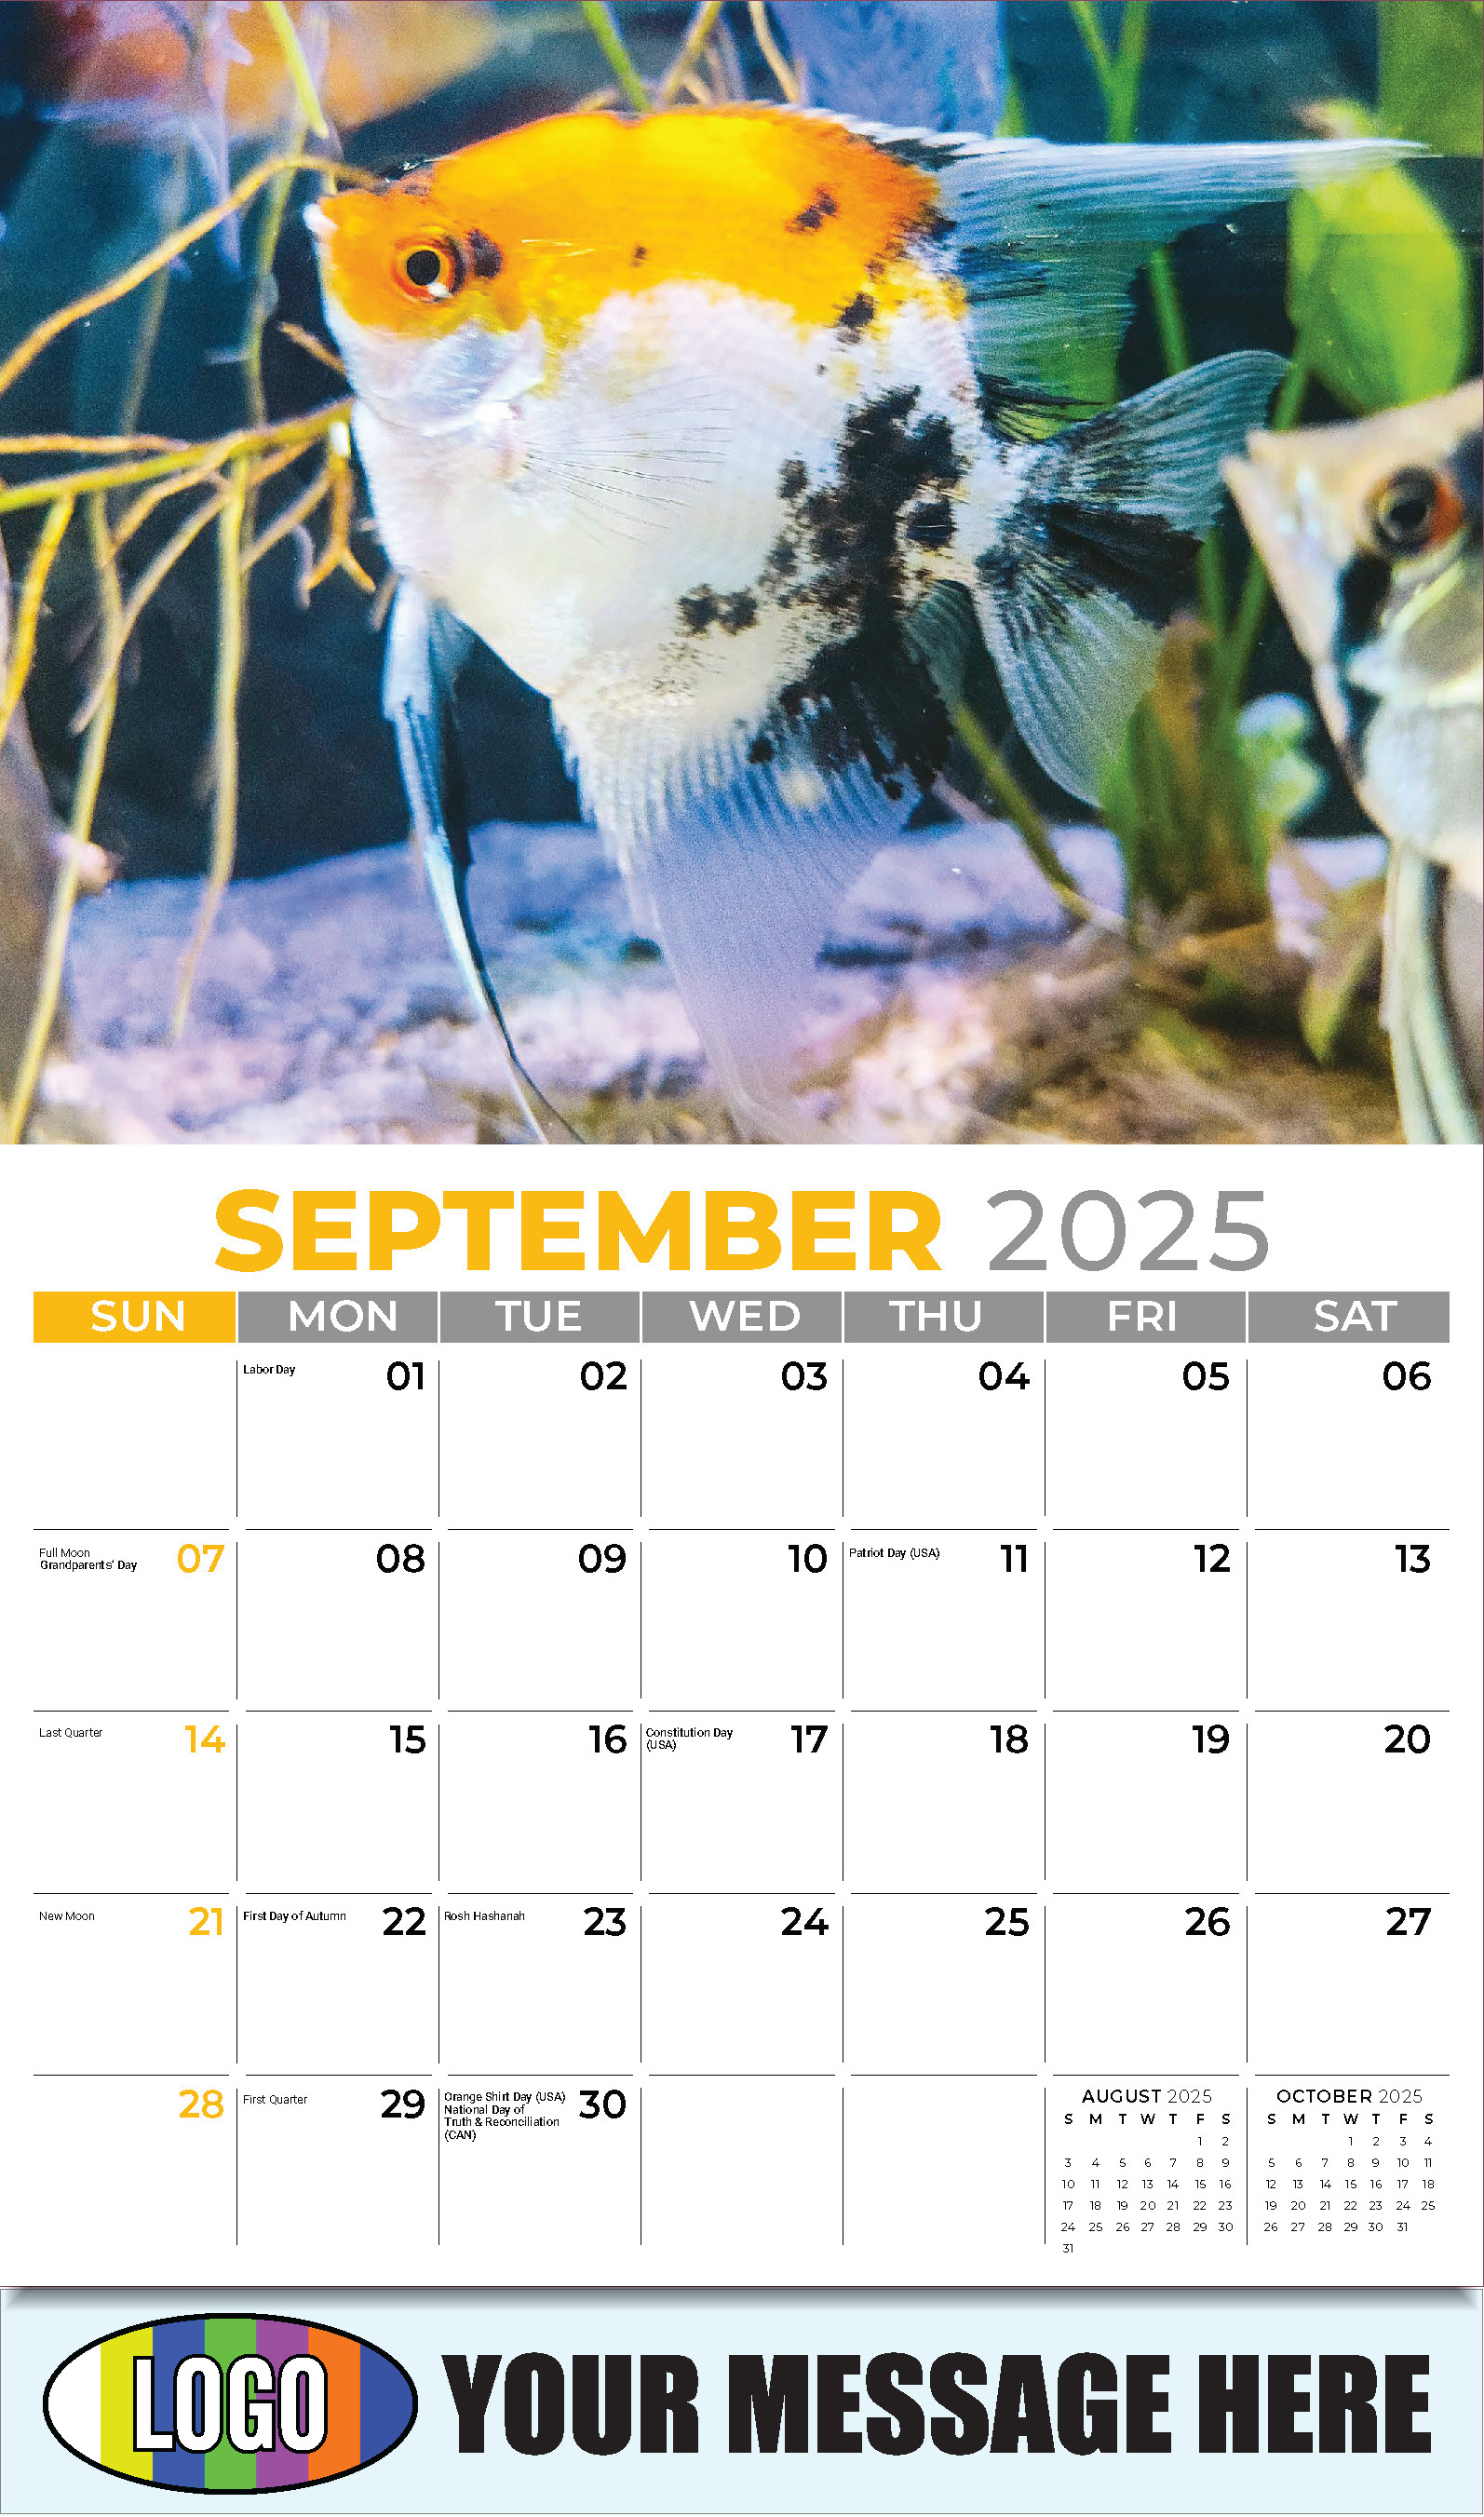 Pets 2025 Business Advertising Wall Calendar - September